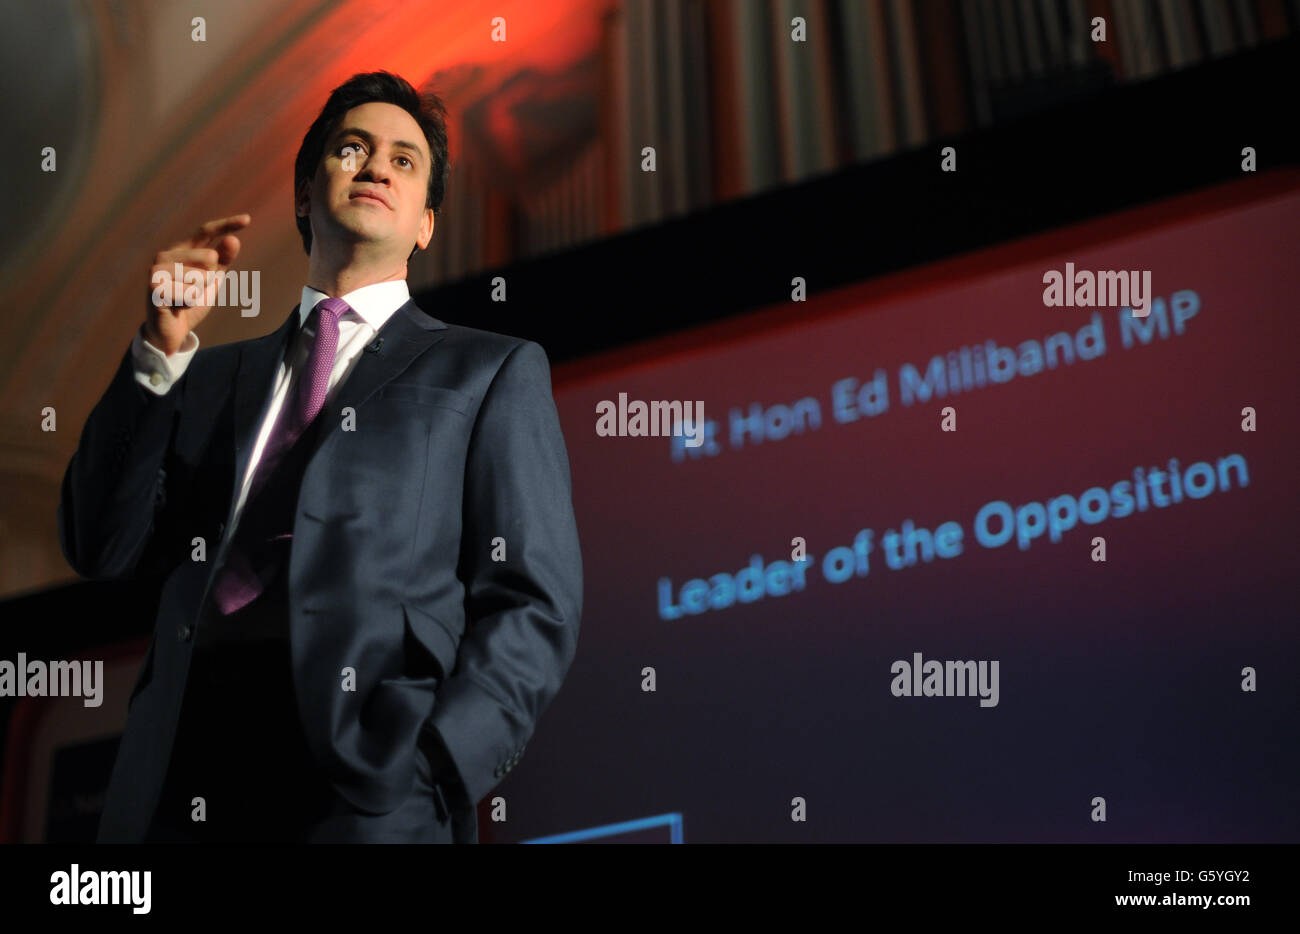 El líder laborista Ed Miliband habla en la conferencia anual de la Cámara de Comercio Británica en Londres. Miliband dará a conocer los planes para una red de bancos regionales encargados de impulsar los préstamos empresariales para estimular el crecimiento económico local. Foto de stock